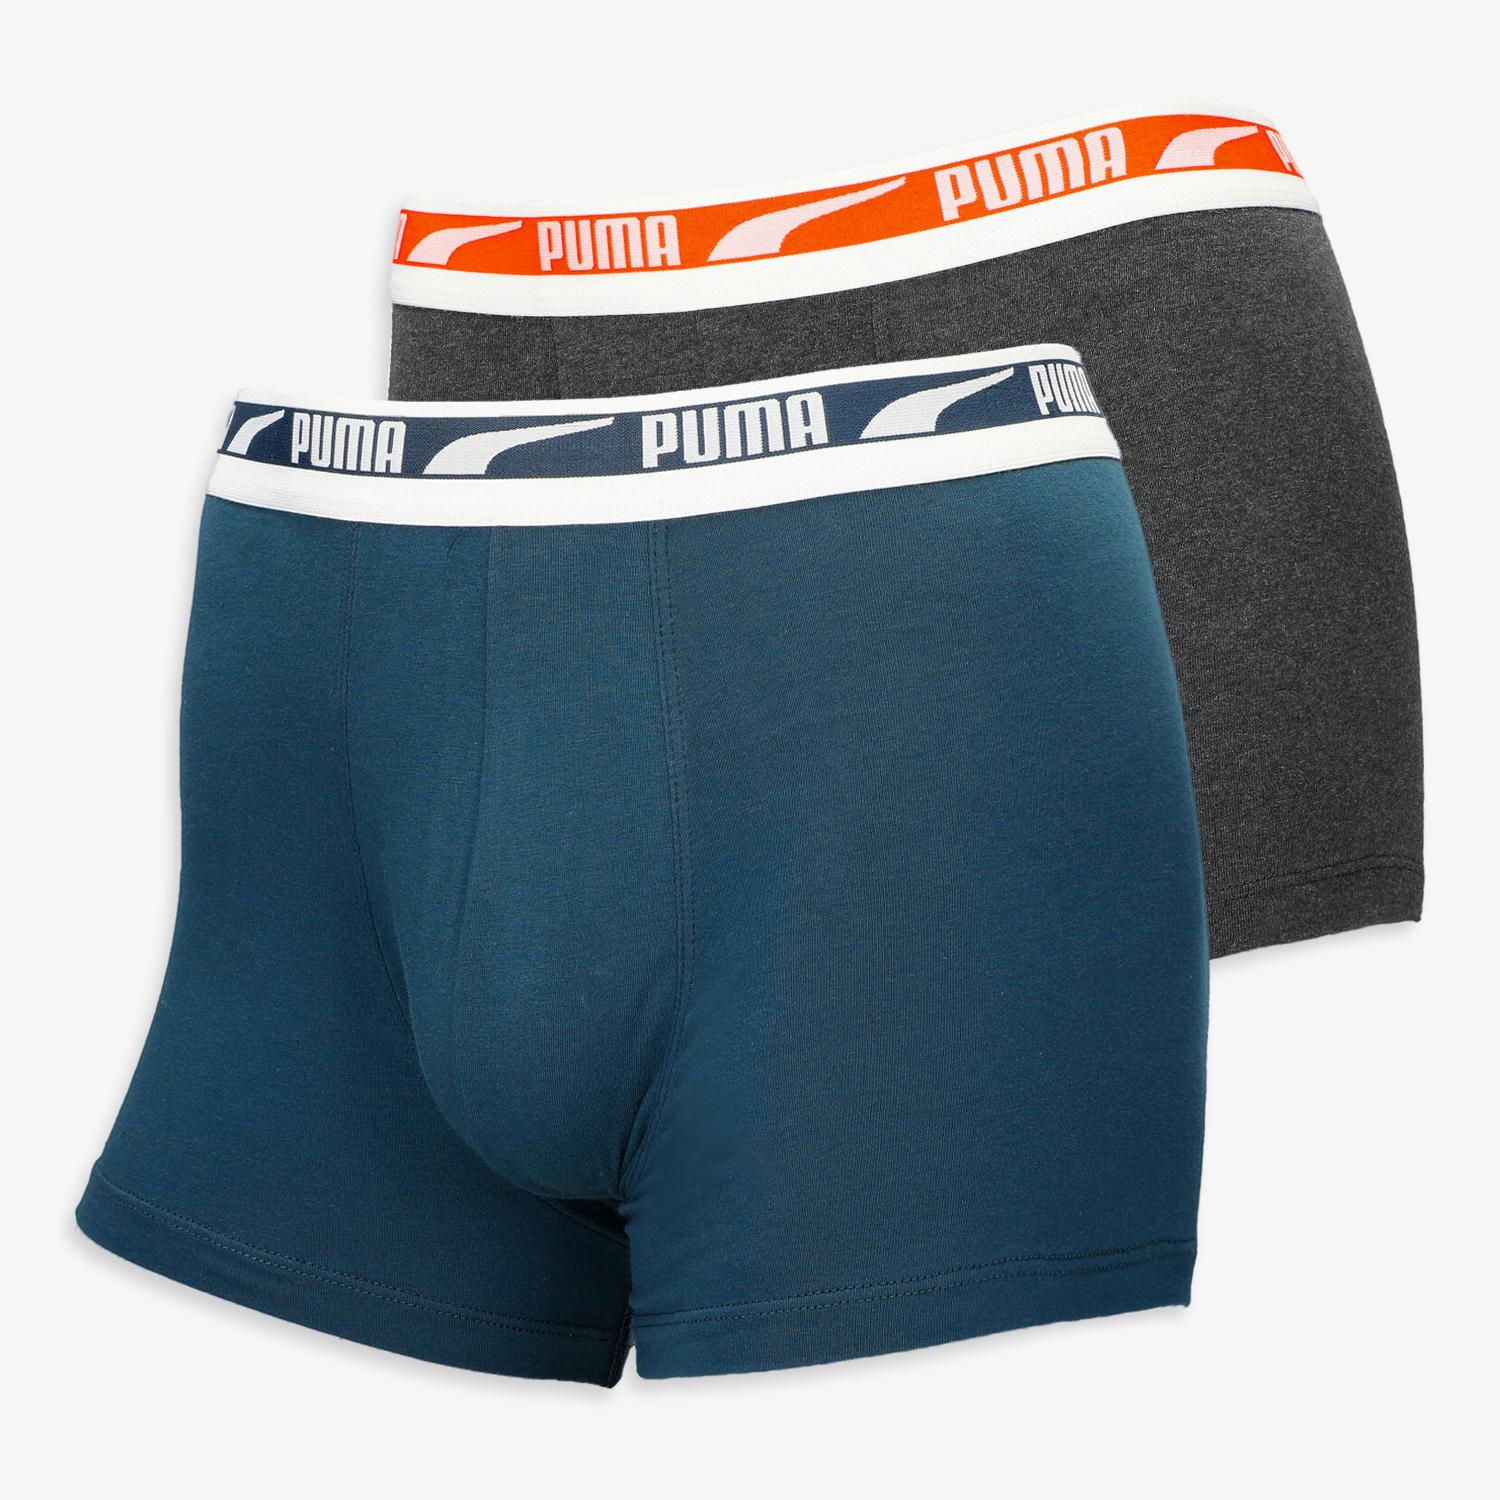 Outlet Homem – Underwear-Zone